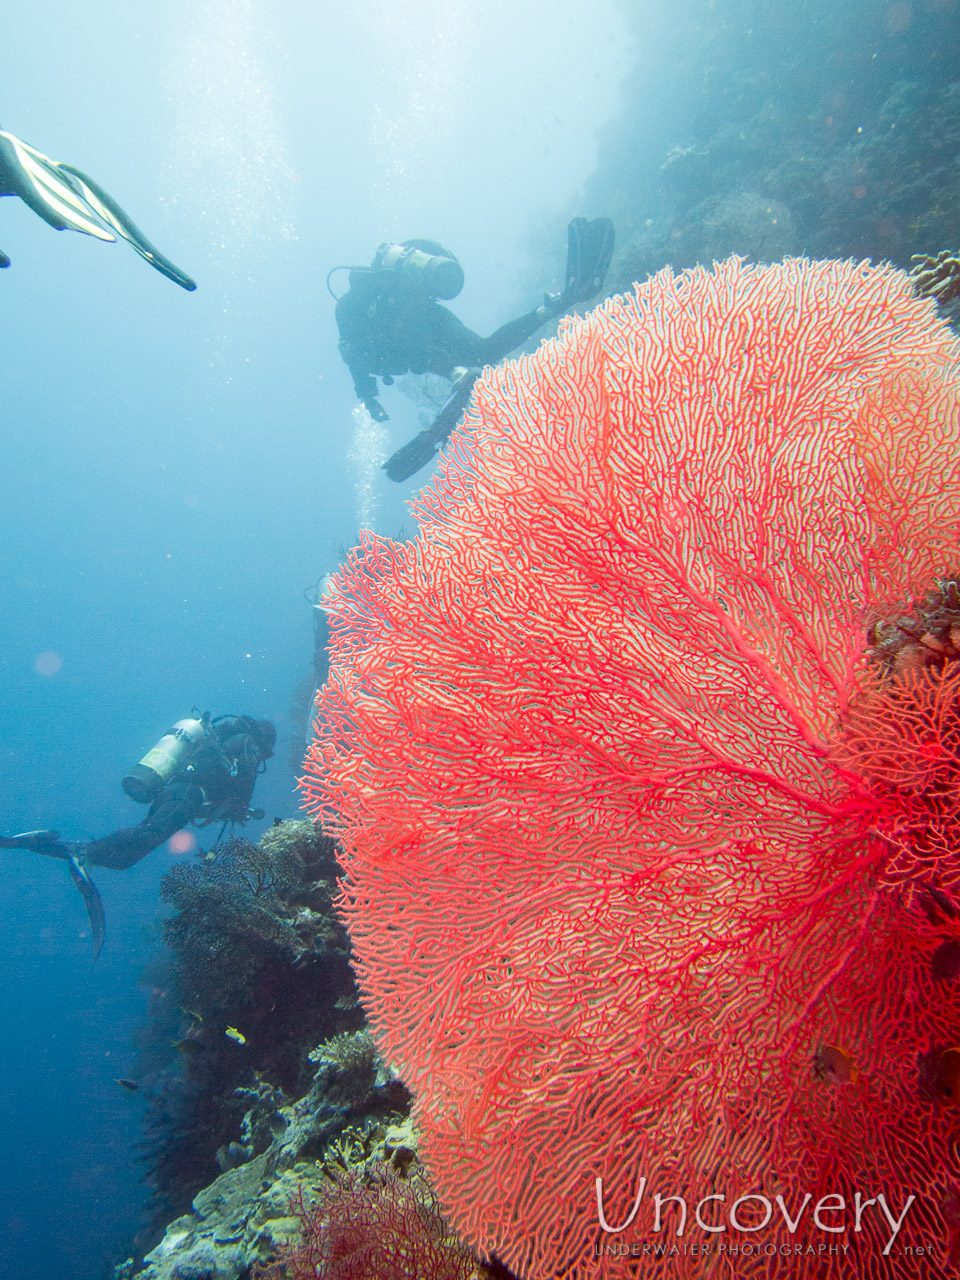 Coral, photo taken in Indonesia, Bali, Menjangan, Var. Locations